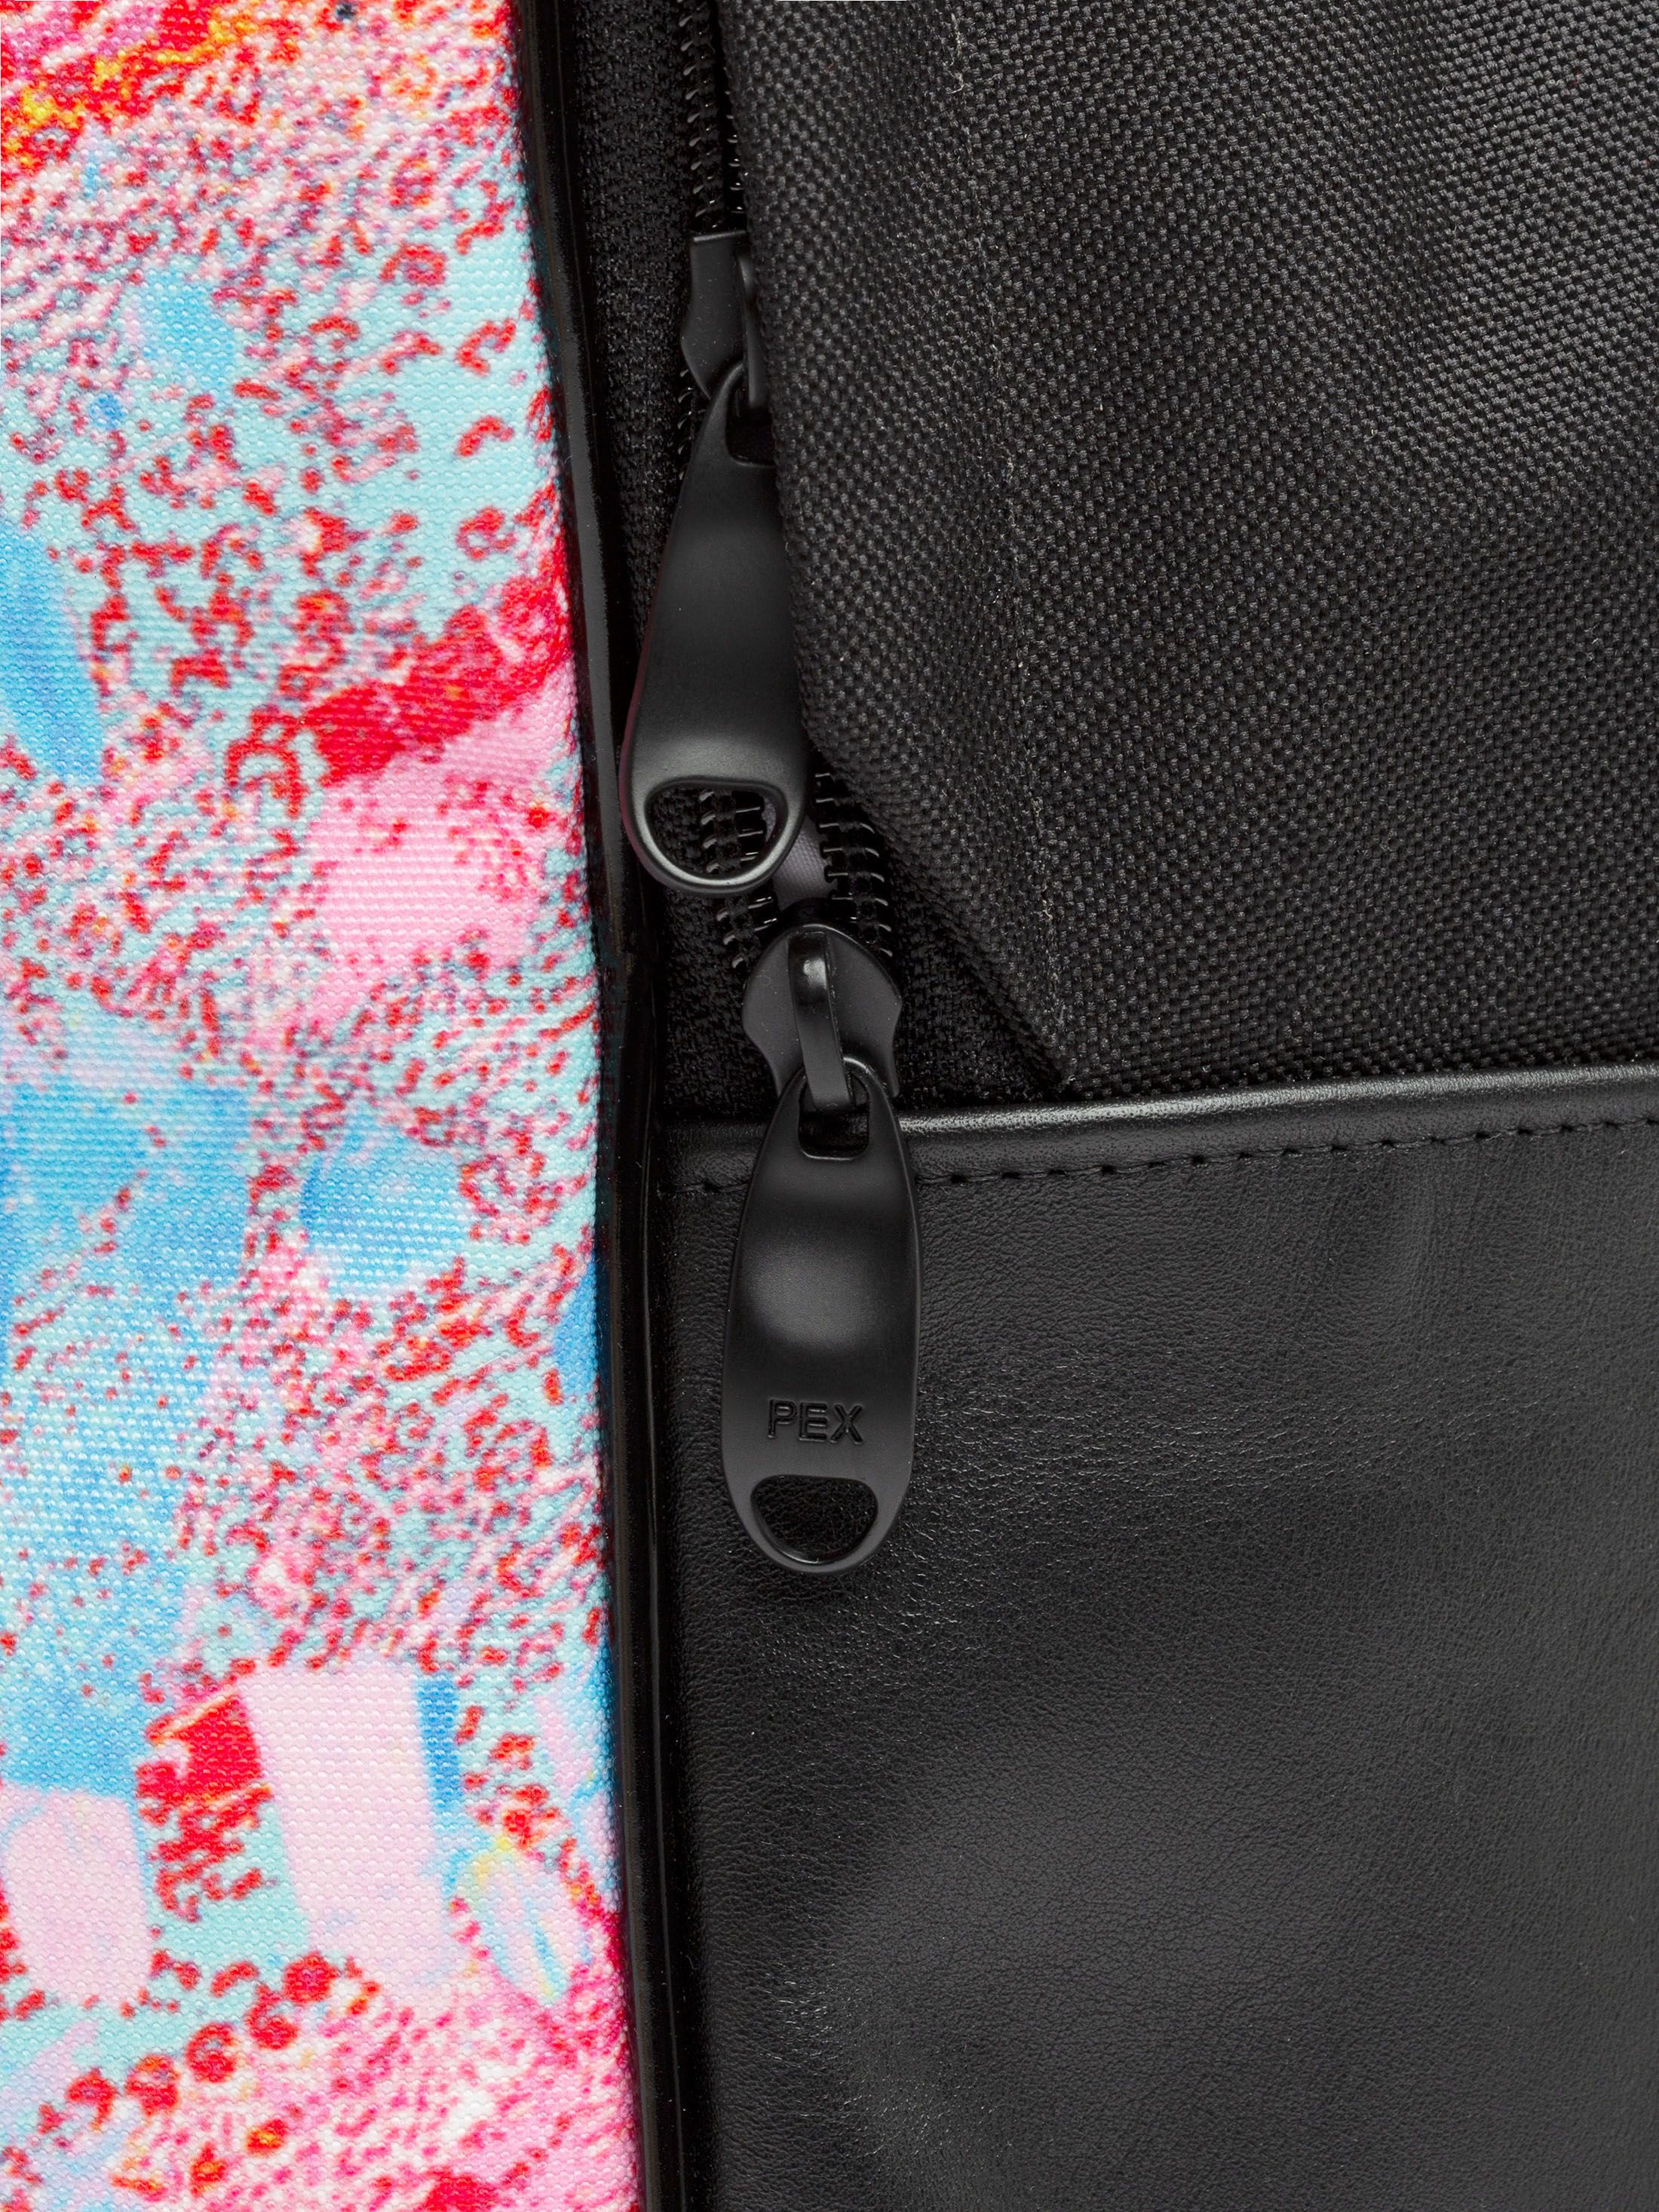 zipper detail of custom backpack